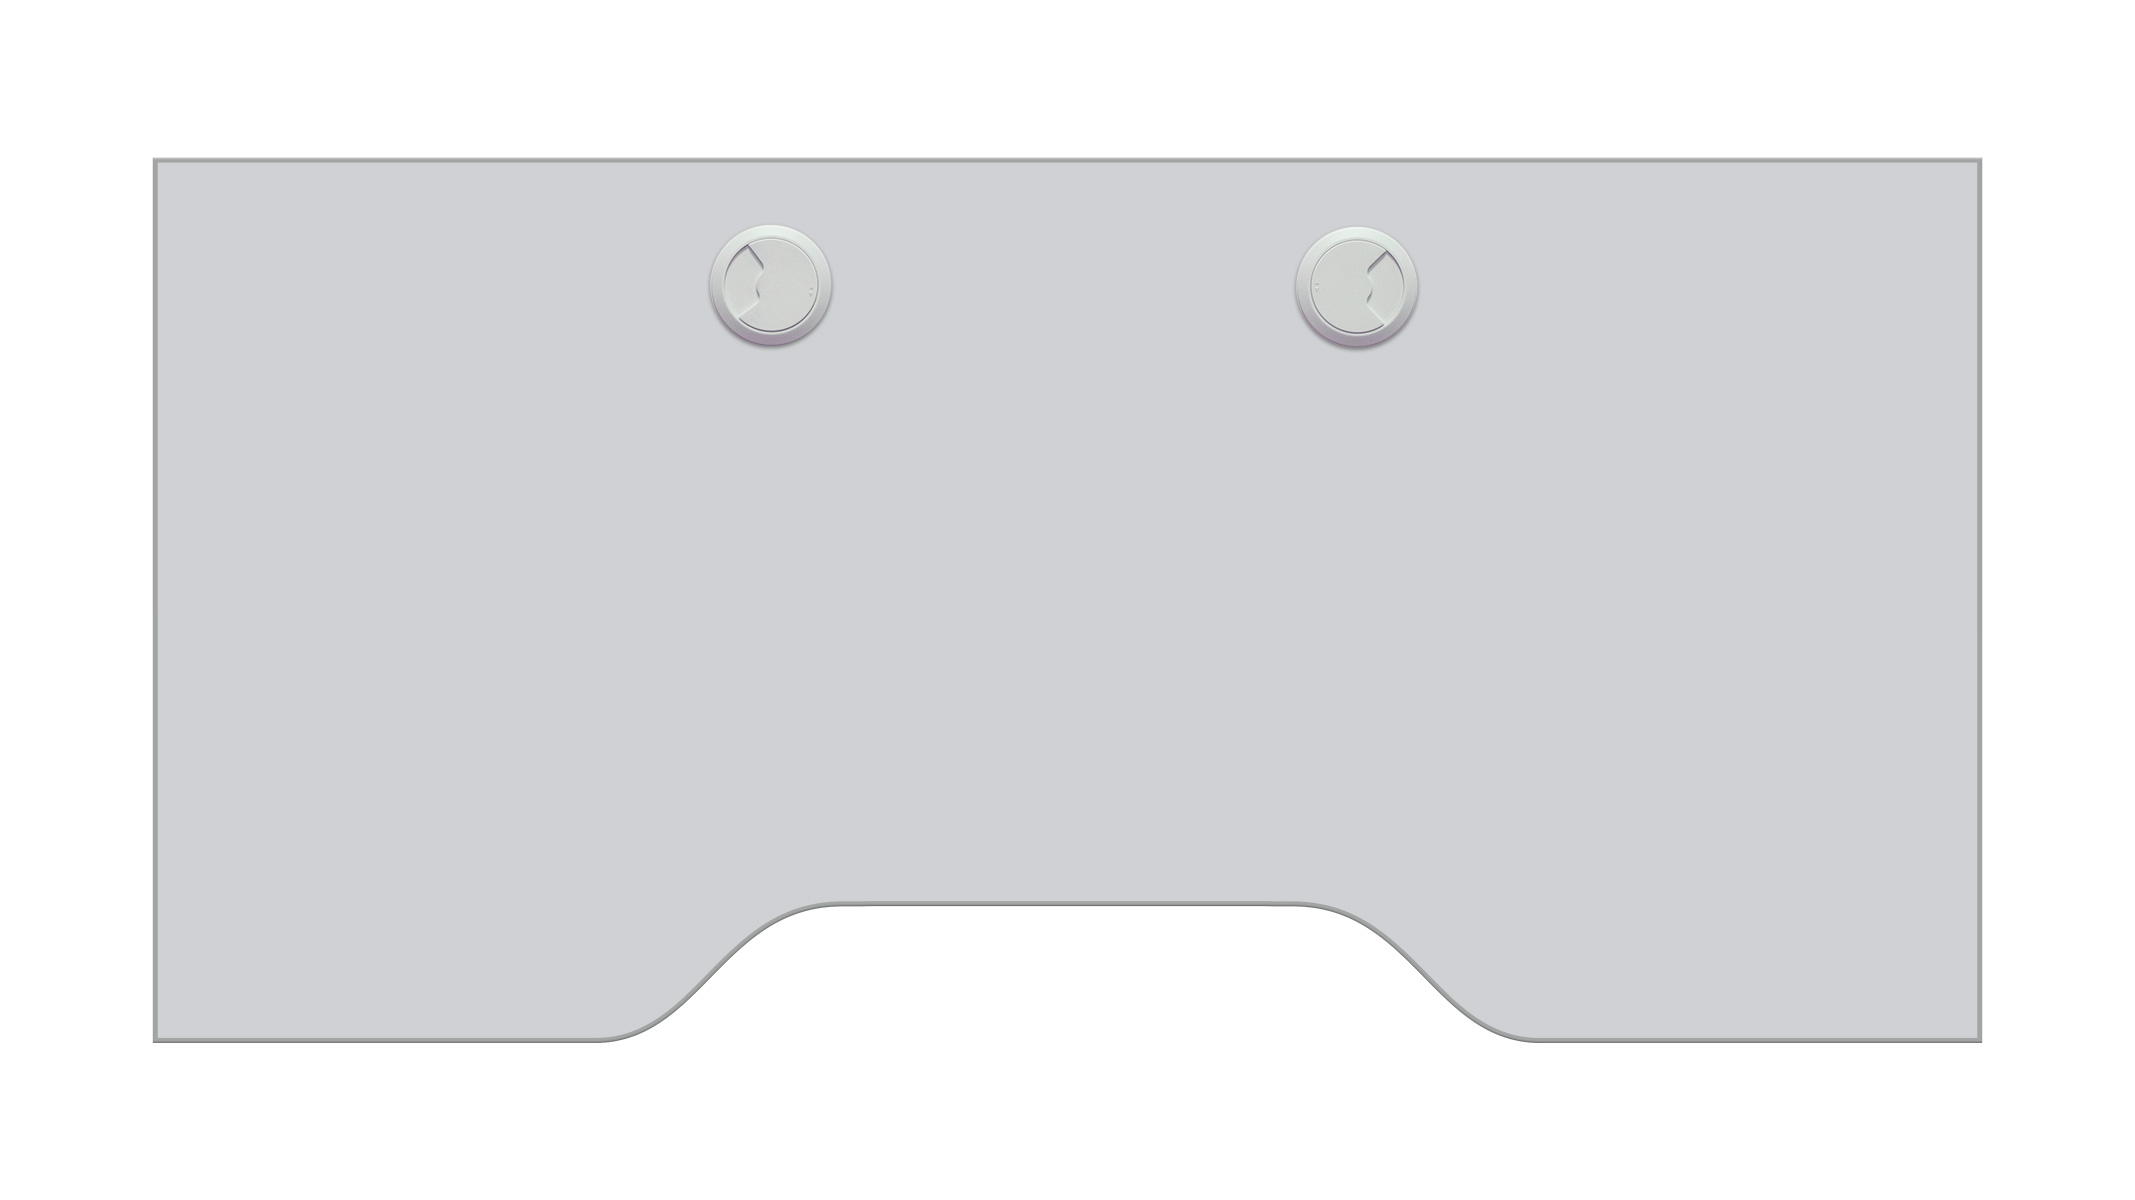 Ablageplatte, durchgehend, seidengrau, Sonderausstattung für Ergolift Evolution 120 cm